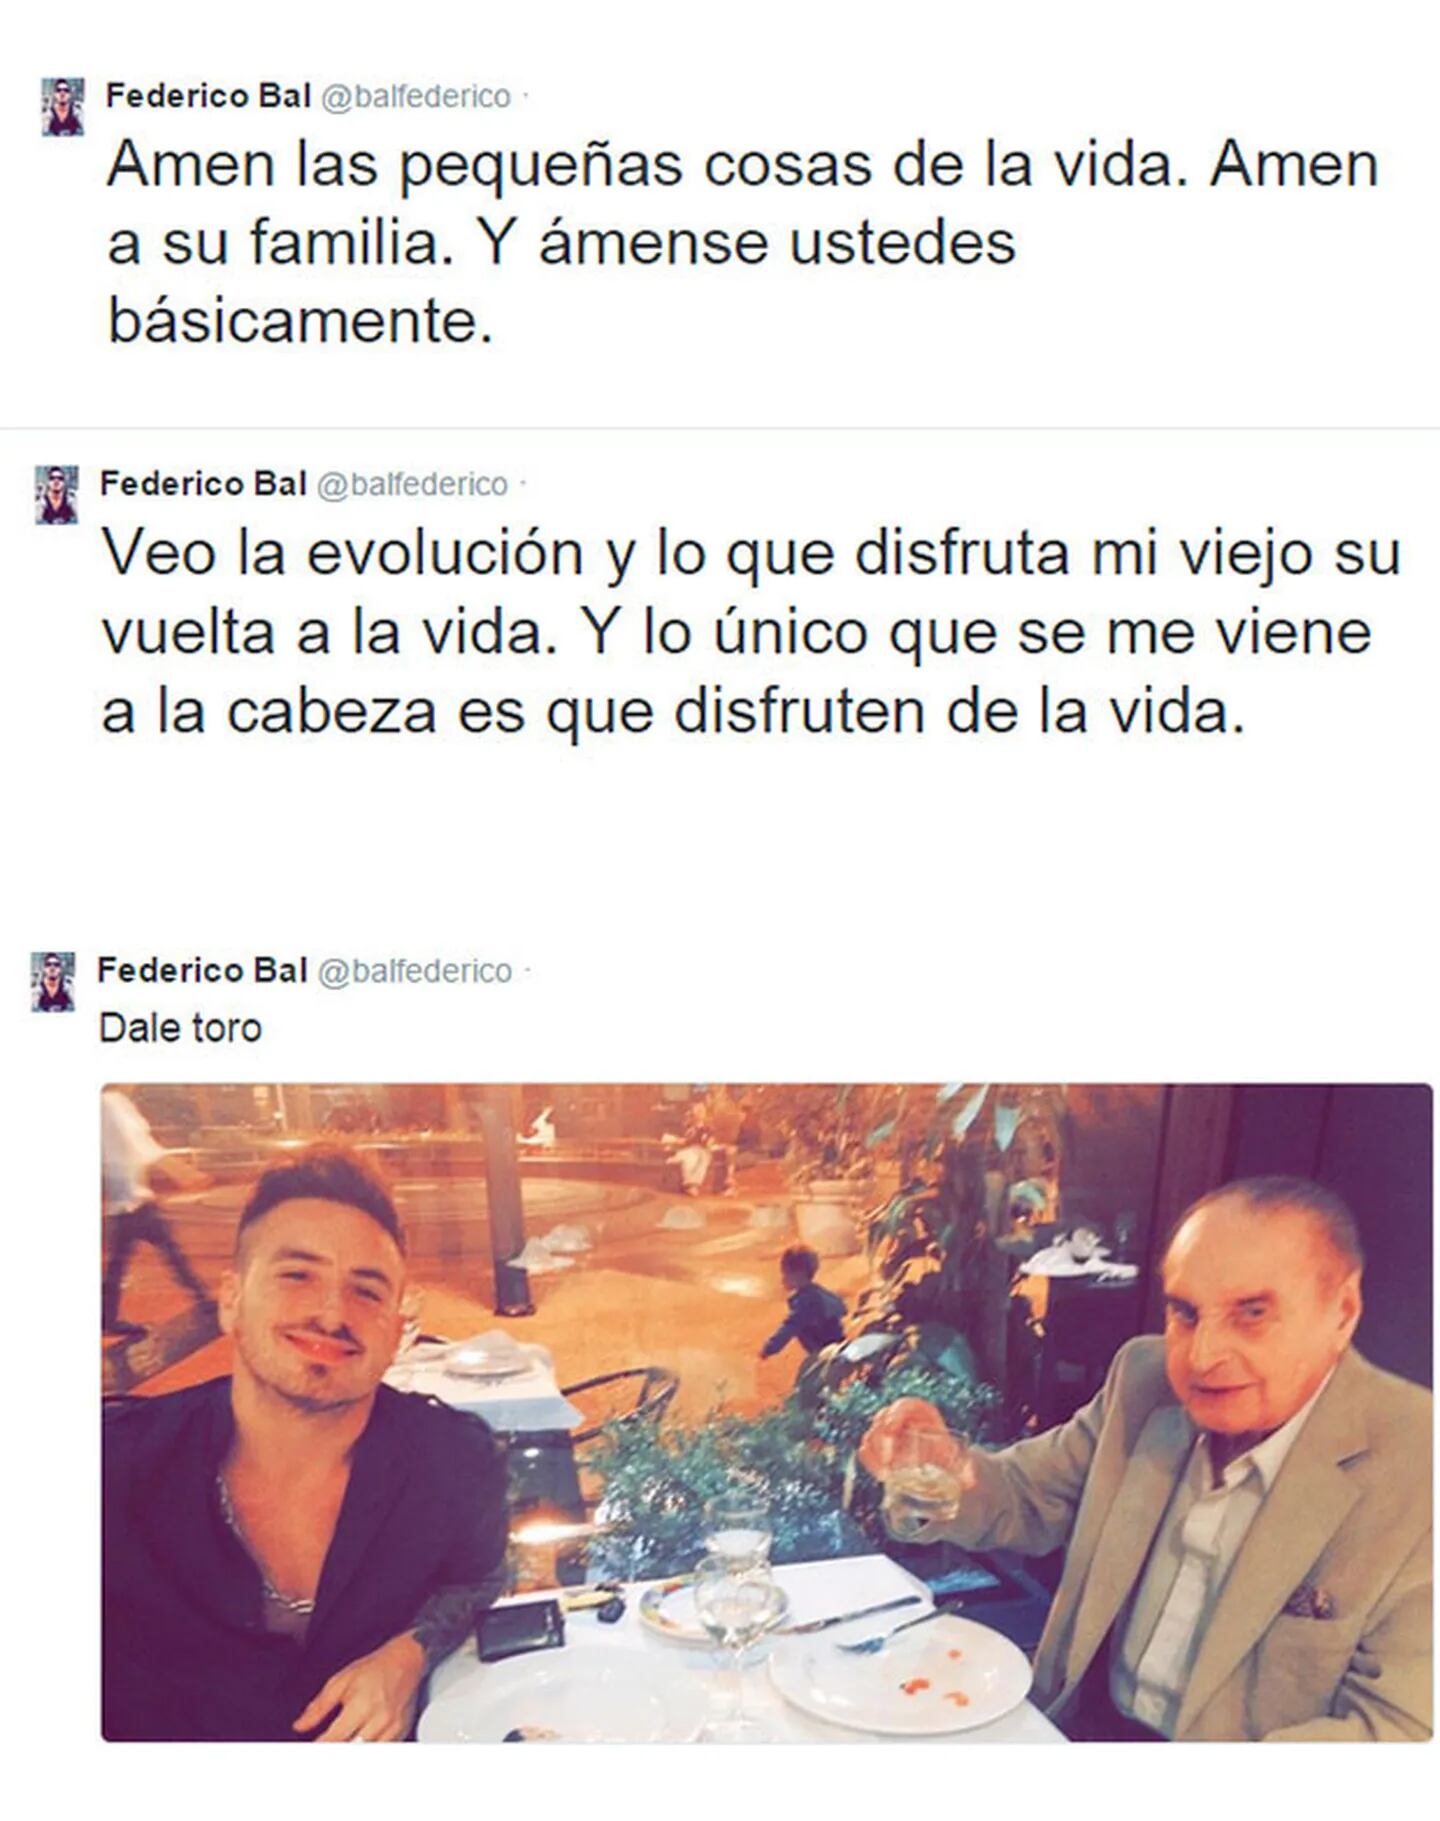 Santiago y Federico Bal, cena y brindis por la vida: "Amen las pequeñas cosas" (Foto: Twitter)